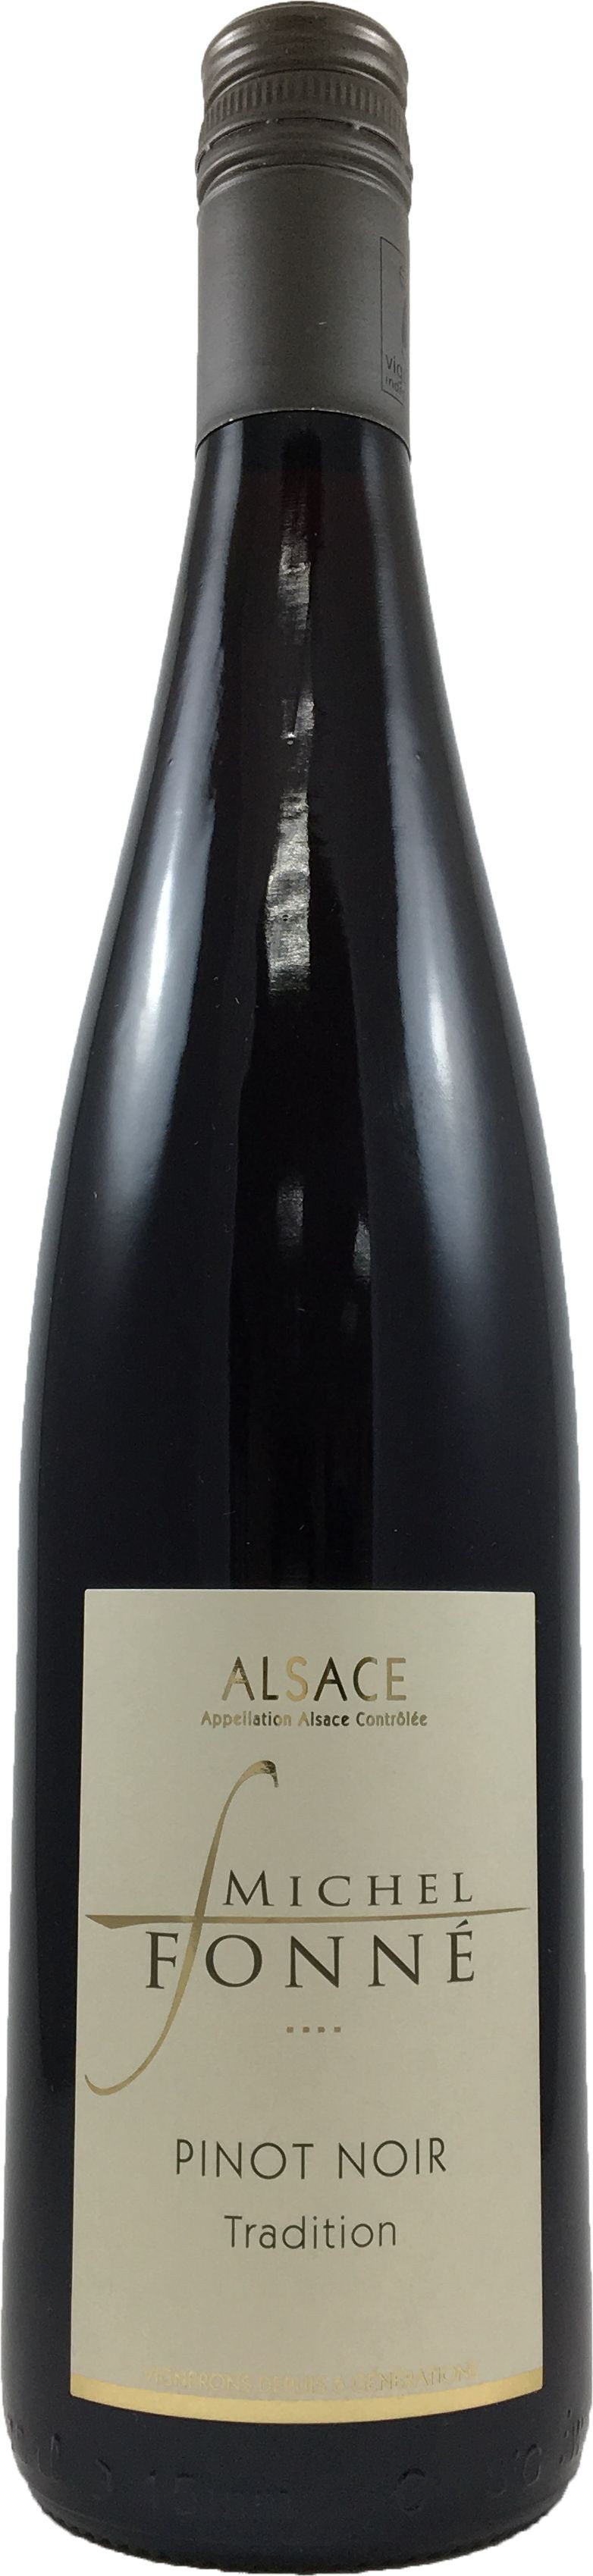 法國 阿爾薩斯AOC  米歇爾弗內酒莊 黑皮諾 紅酒2015